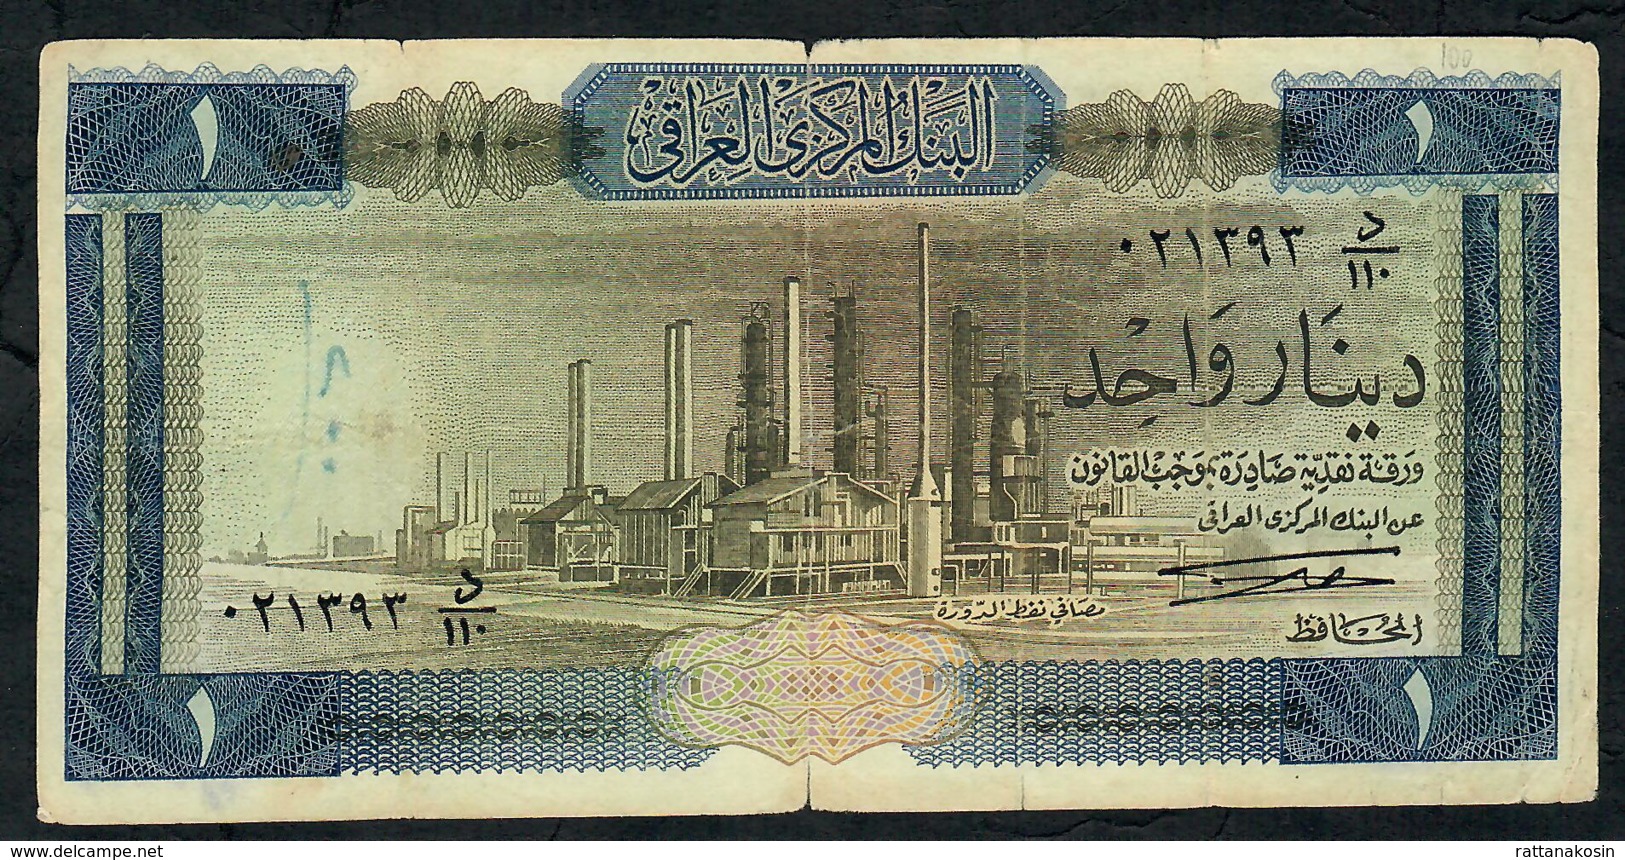 IRAQ P58a  1  DINAR  1971  Signature 5   FINE - Iraq